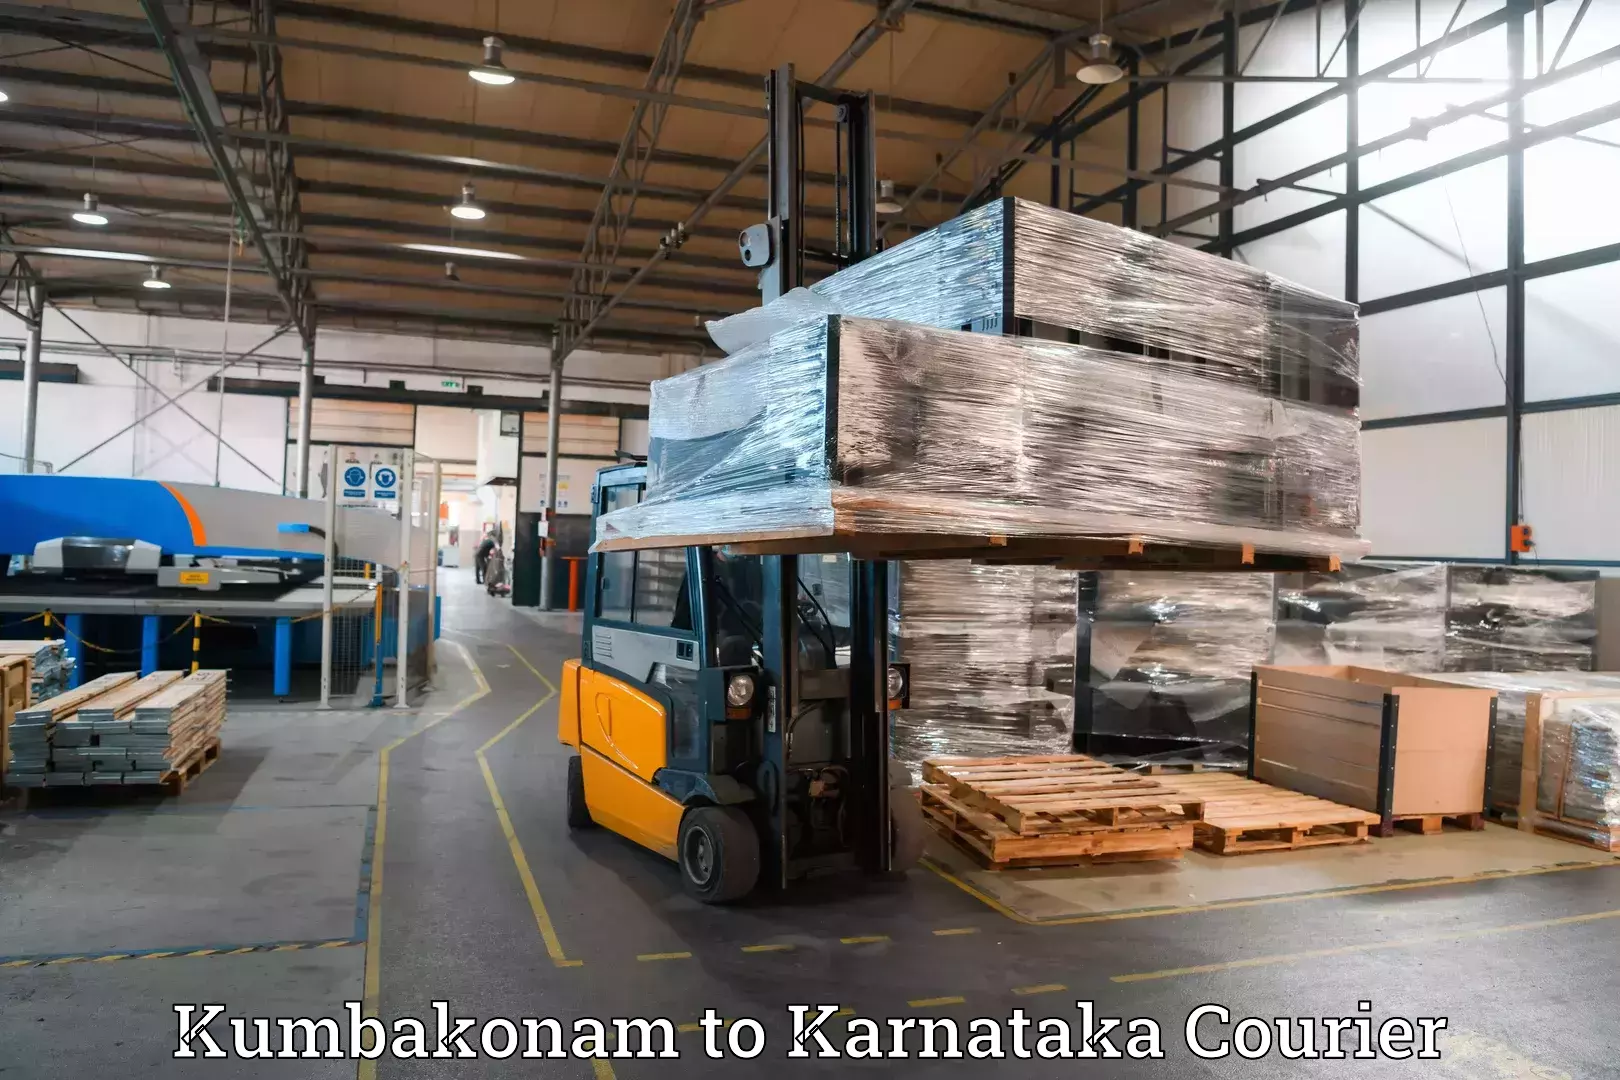 Luggage shipment specialists Kumbakonam to Yaragatti